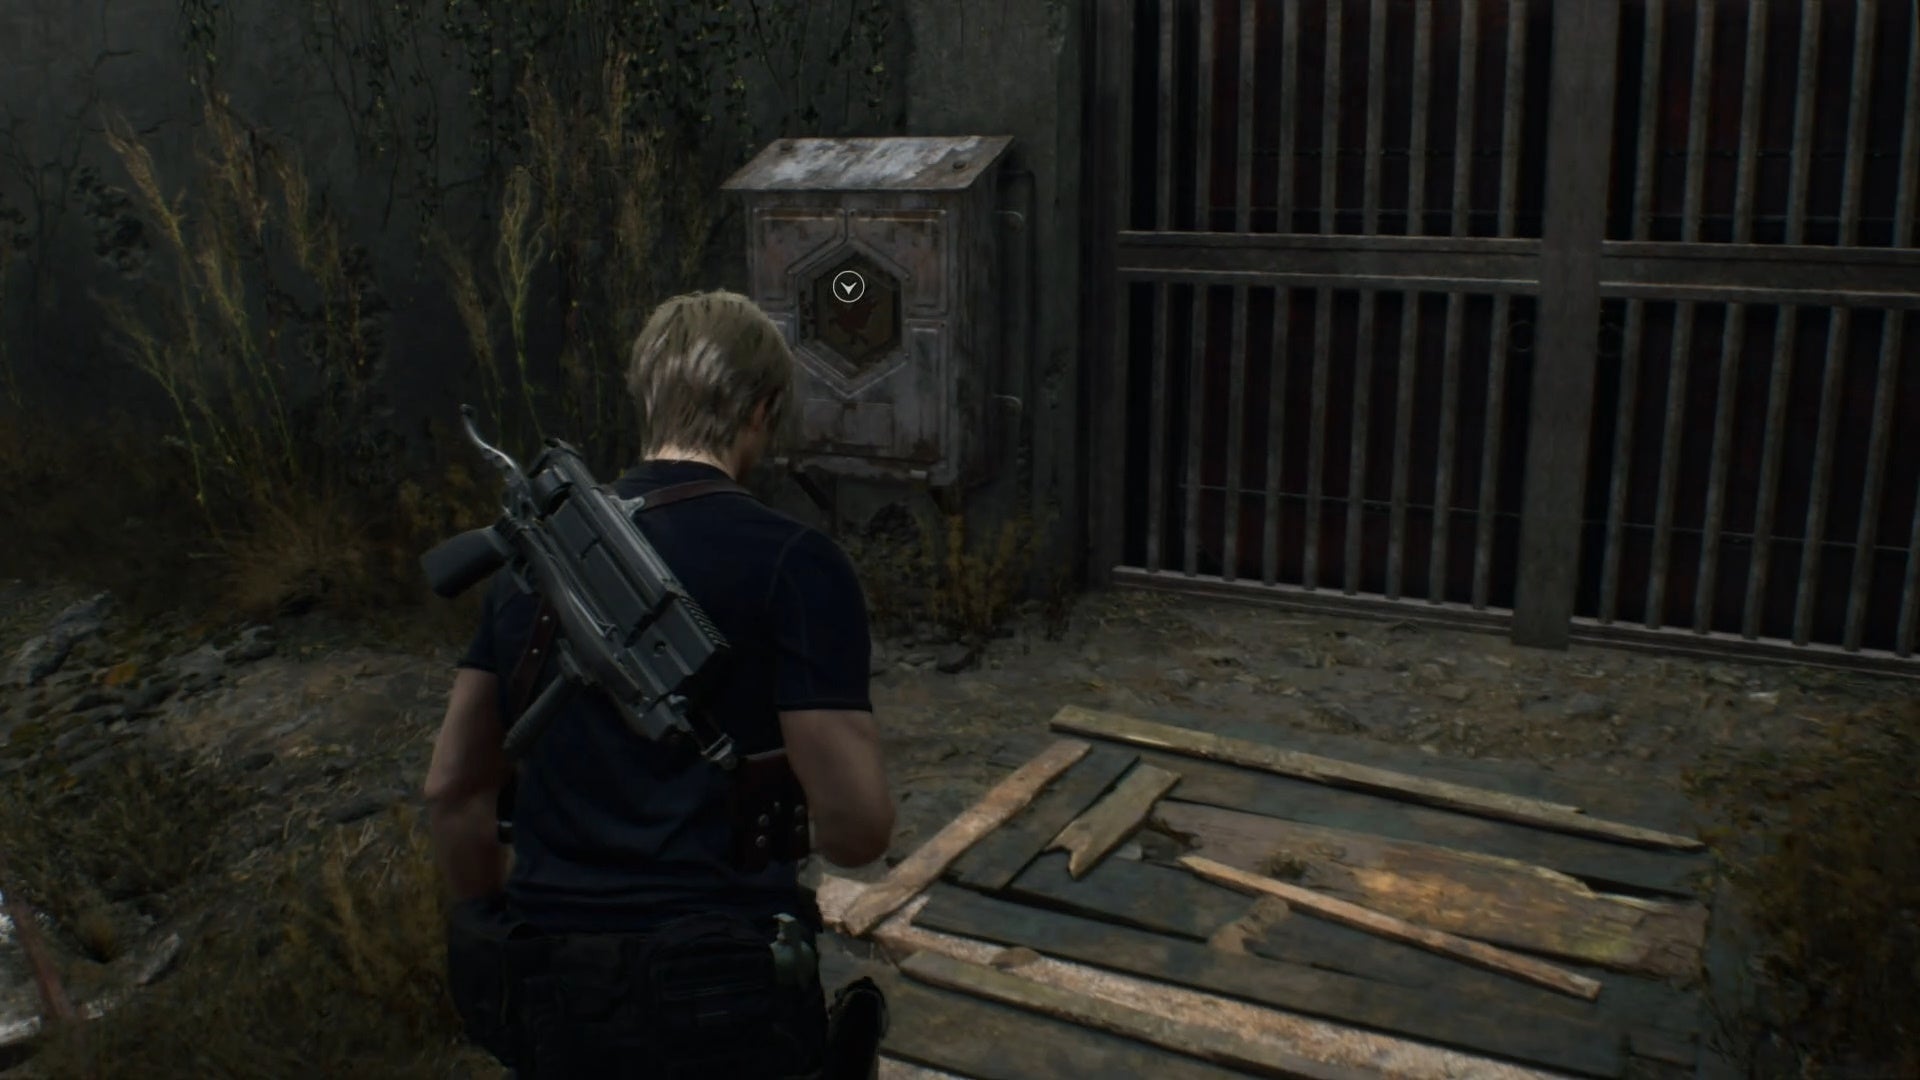 Resuelve el rompecabezas del agujero en forma de hexágono de Resident Evil 4 y localiza el emblema hexadecimal